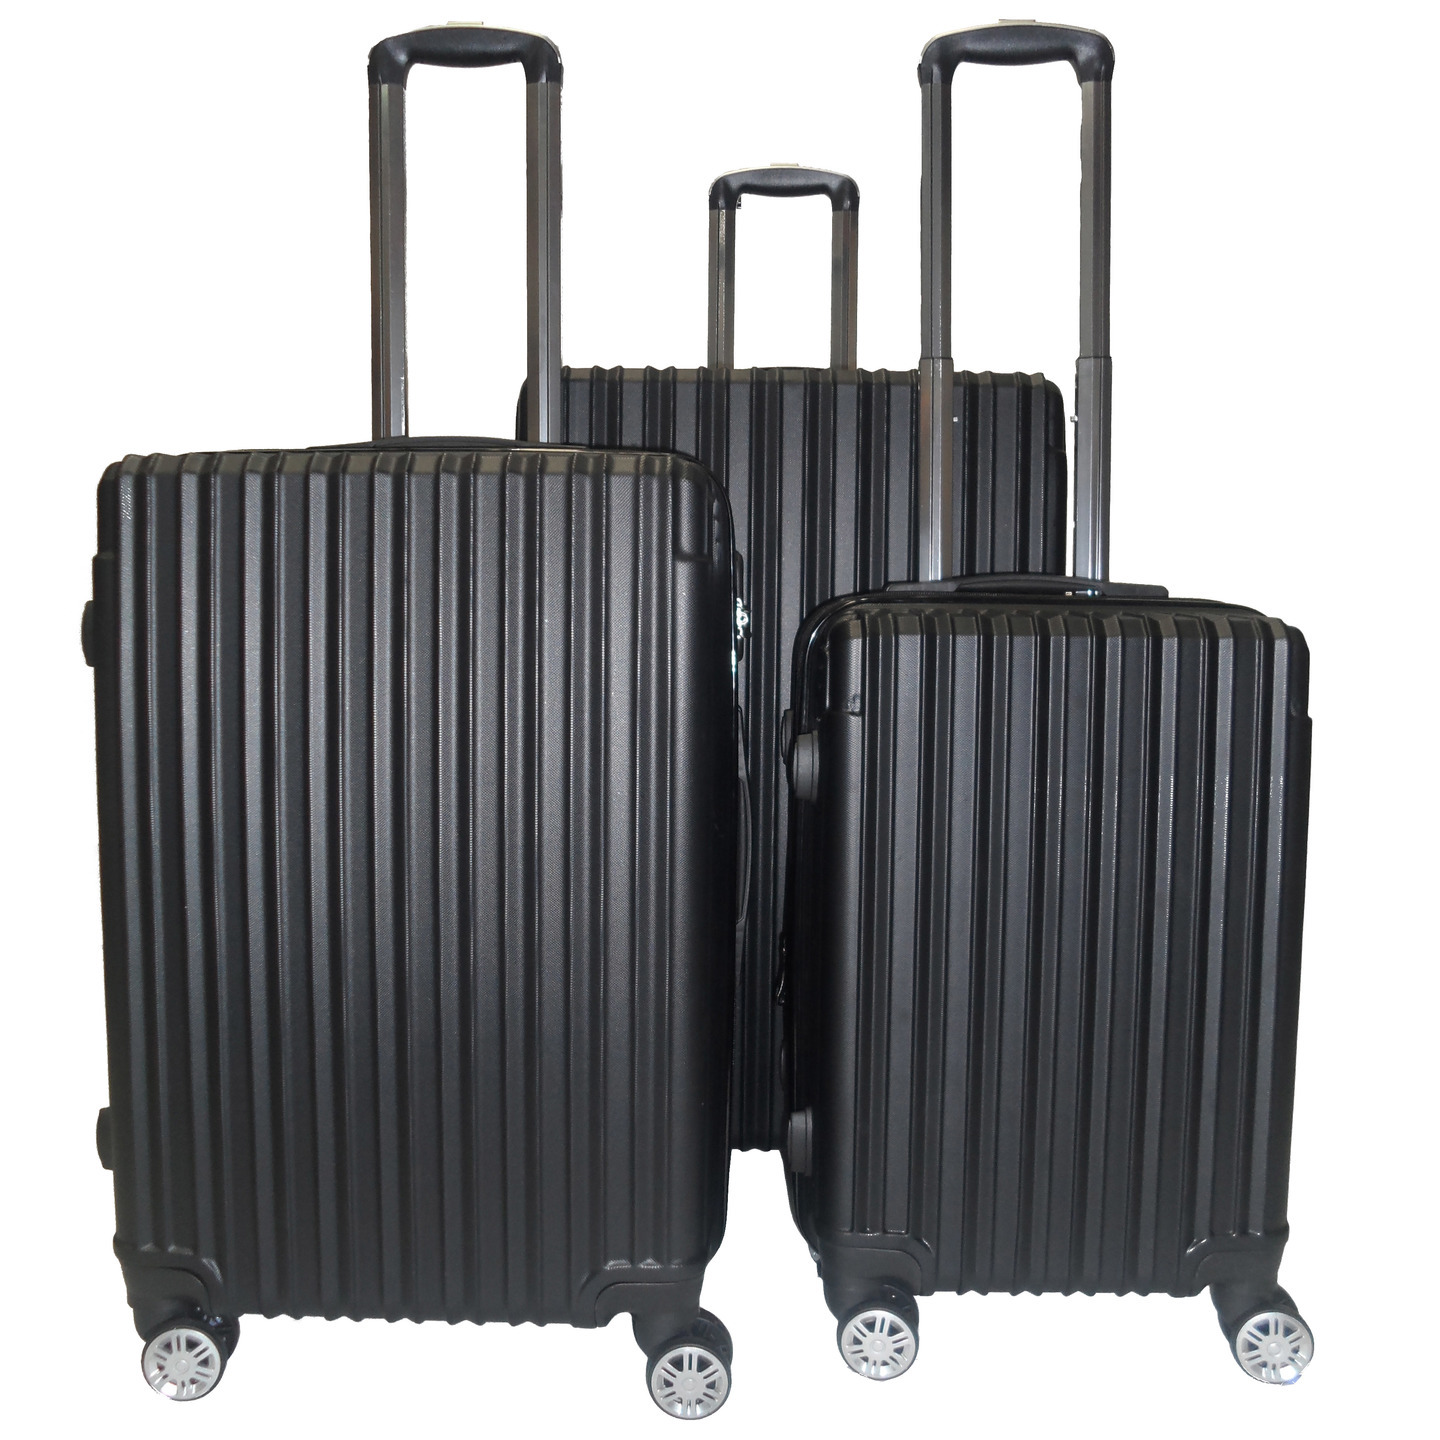 RV-60 Elegant Hard Box Luggage - Black 20,inch,24 inch, 28 inch